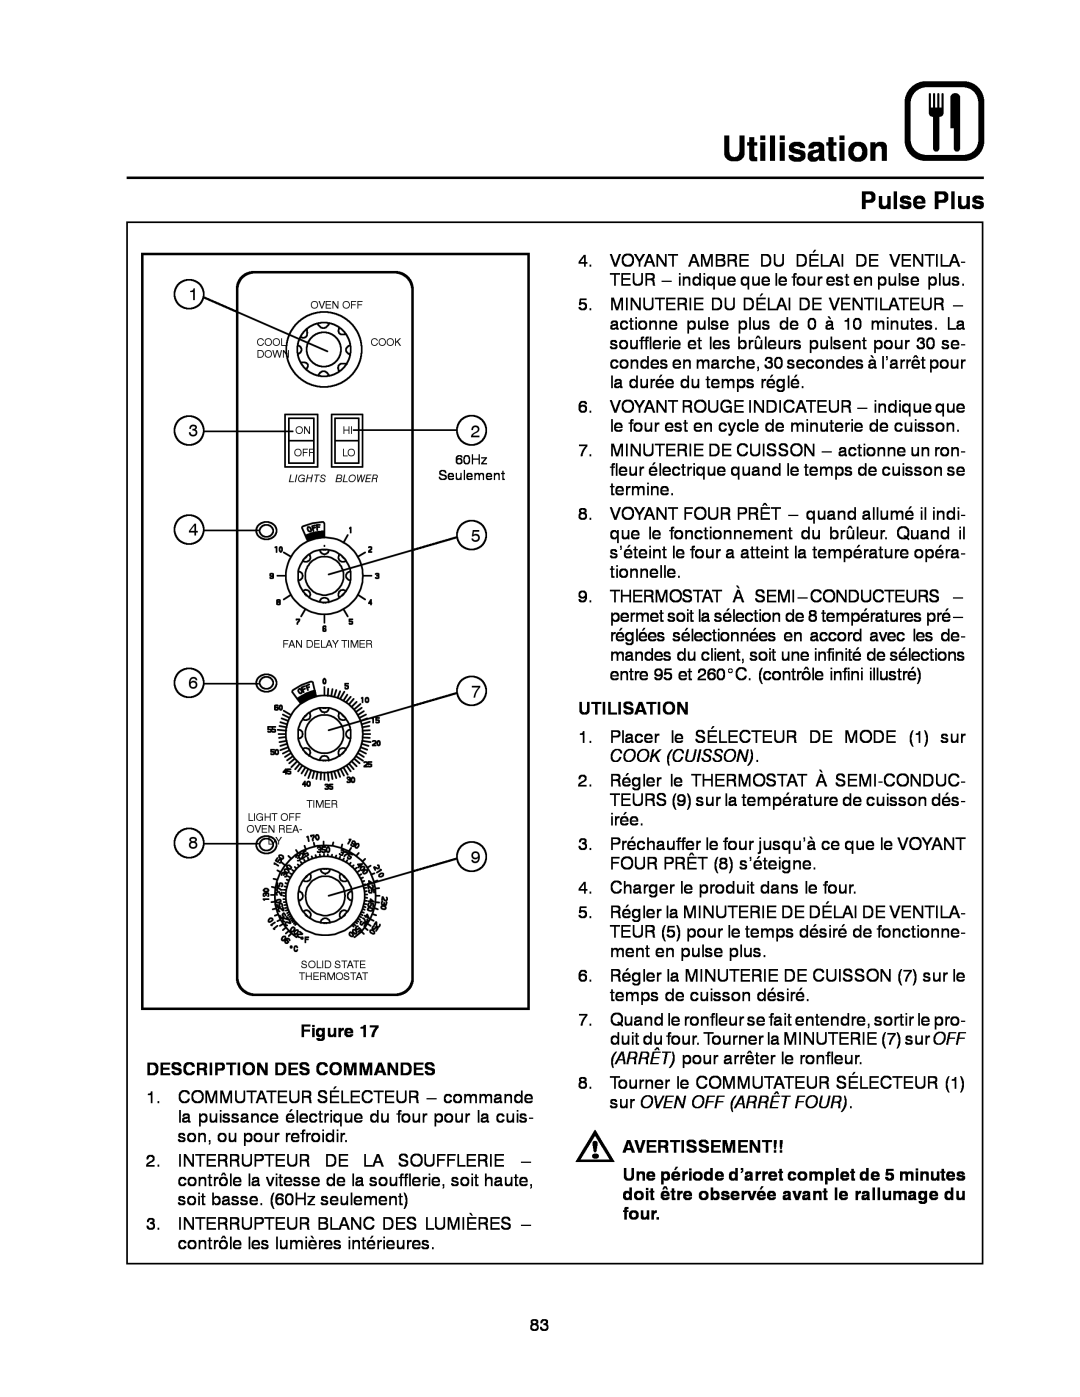 Blodgett DFG-100, DFG-200 manual Utilisation, Pulse Plus, Description Des Commandes, Avertissement 